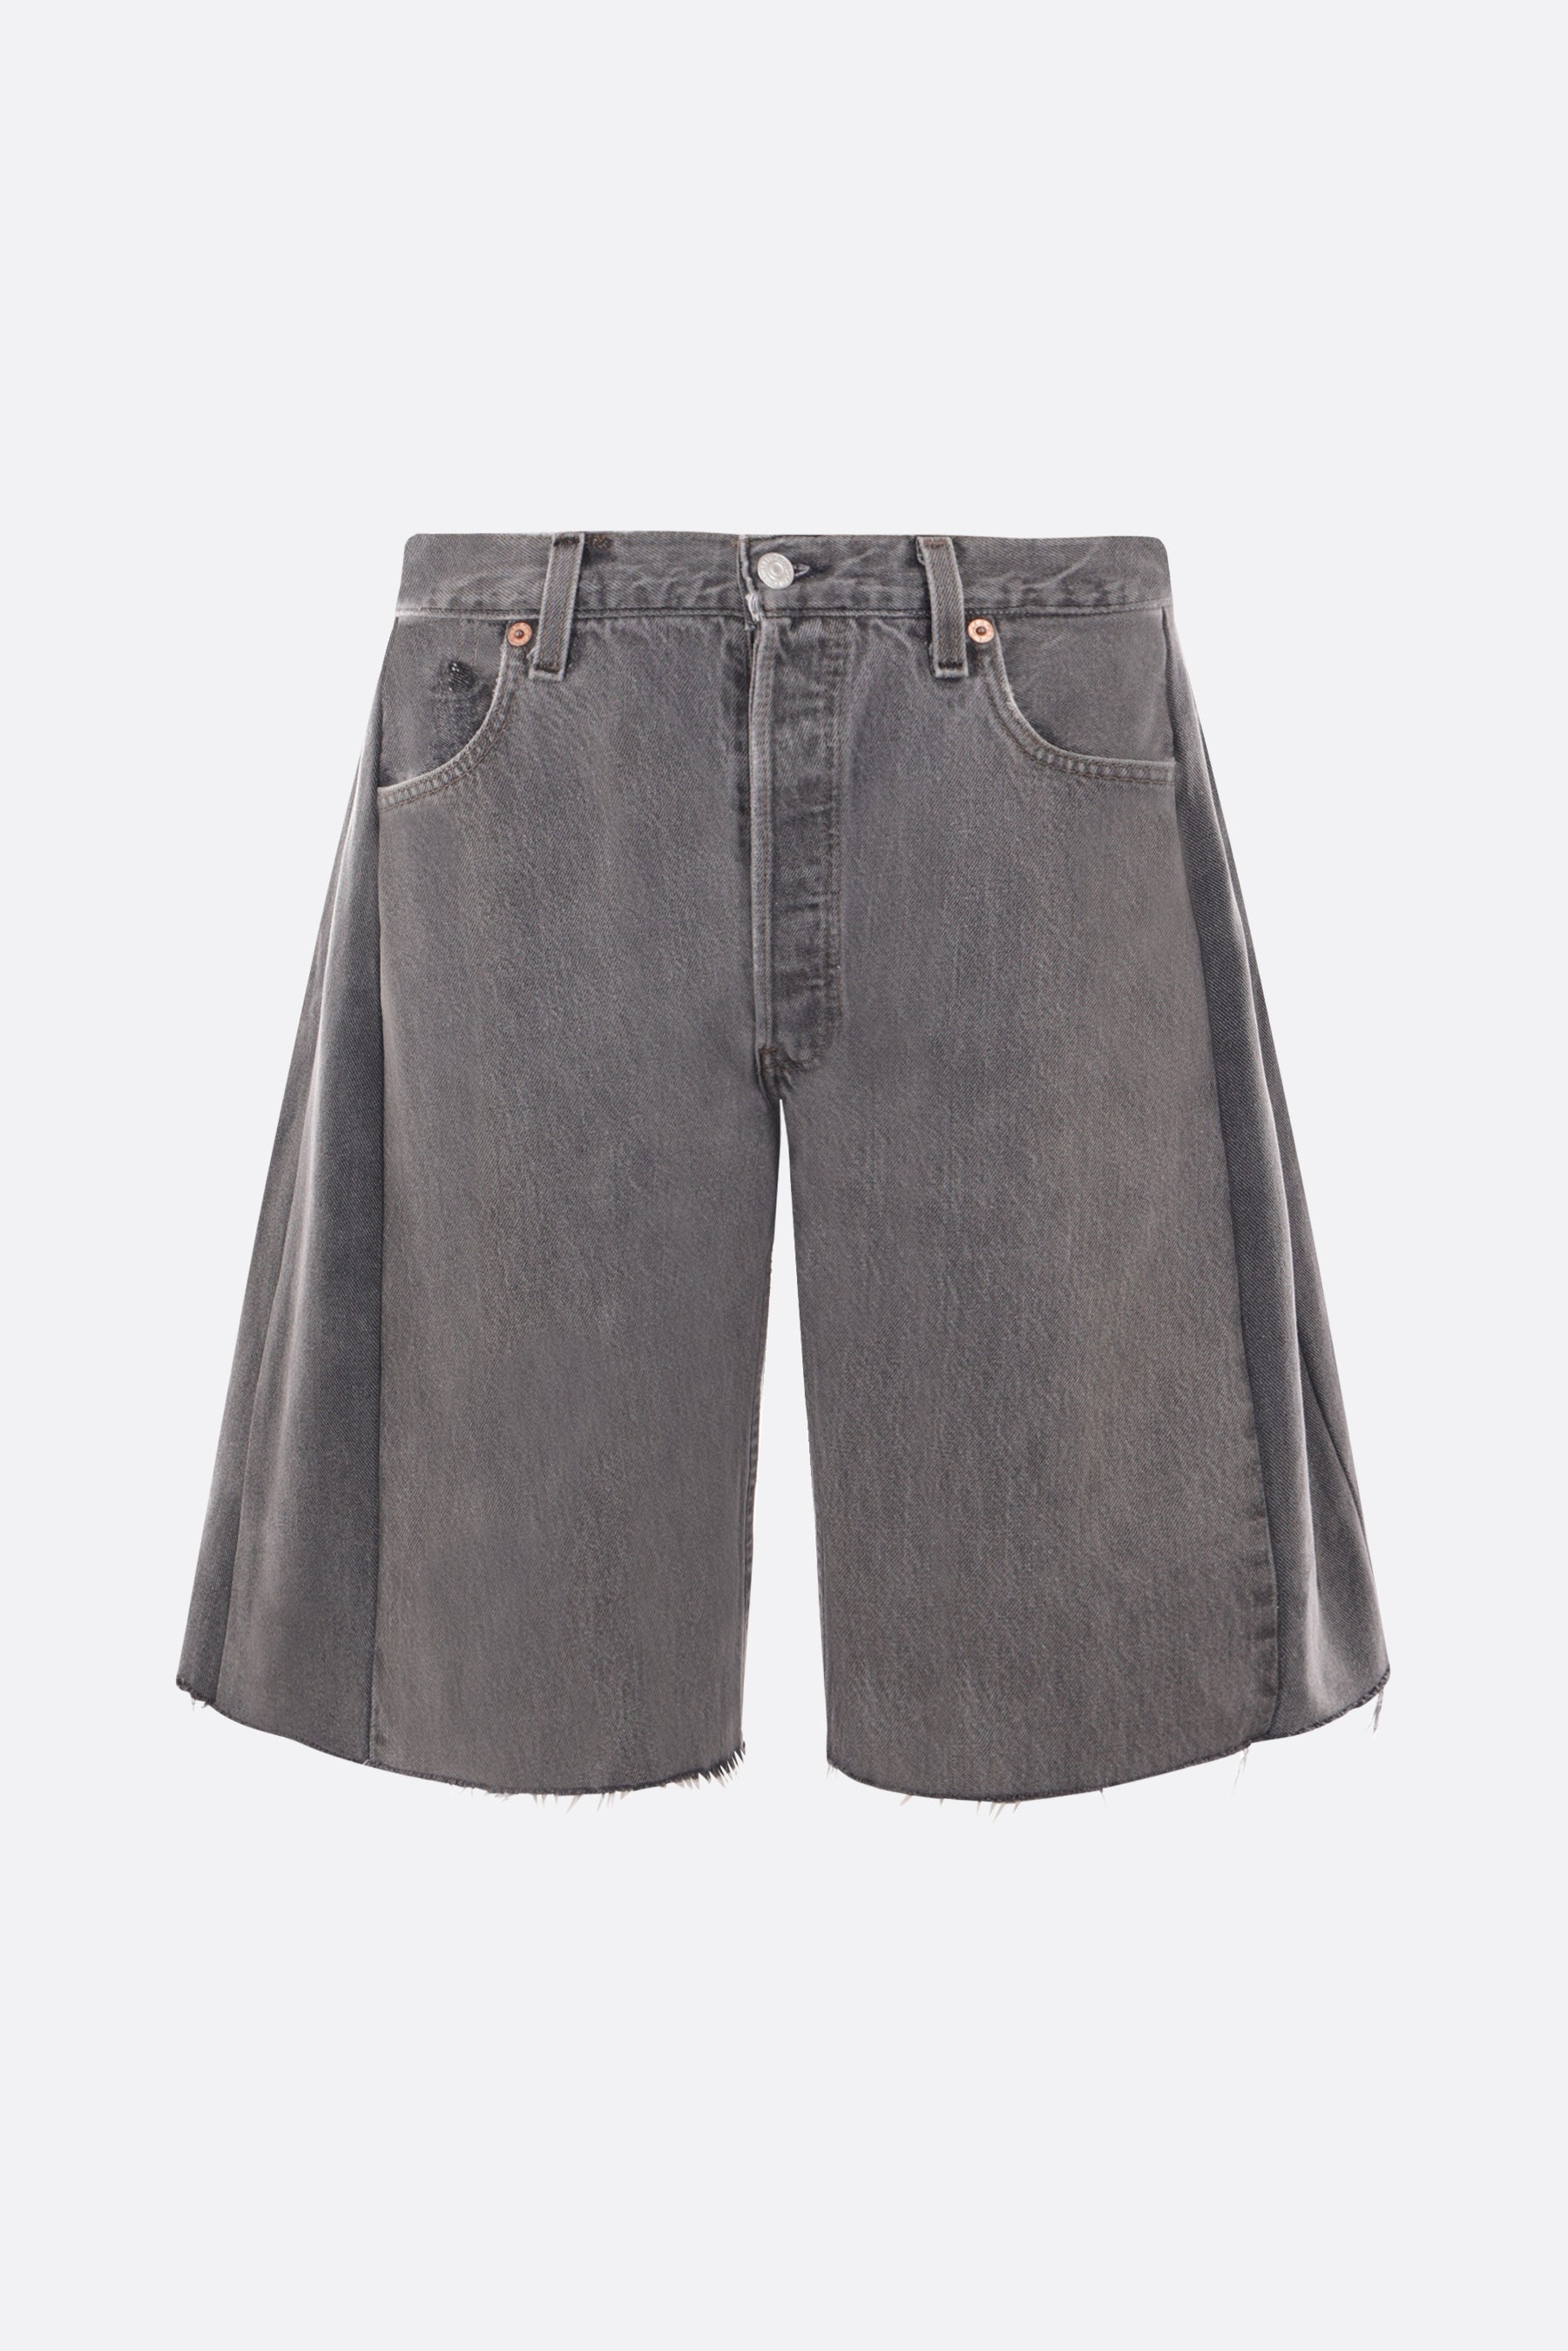 Lasso upcycled vintage denim shorts